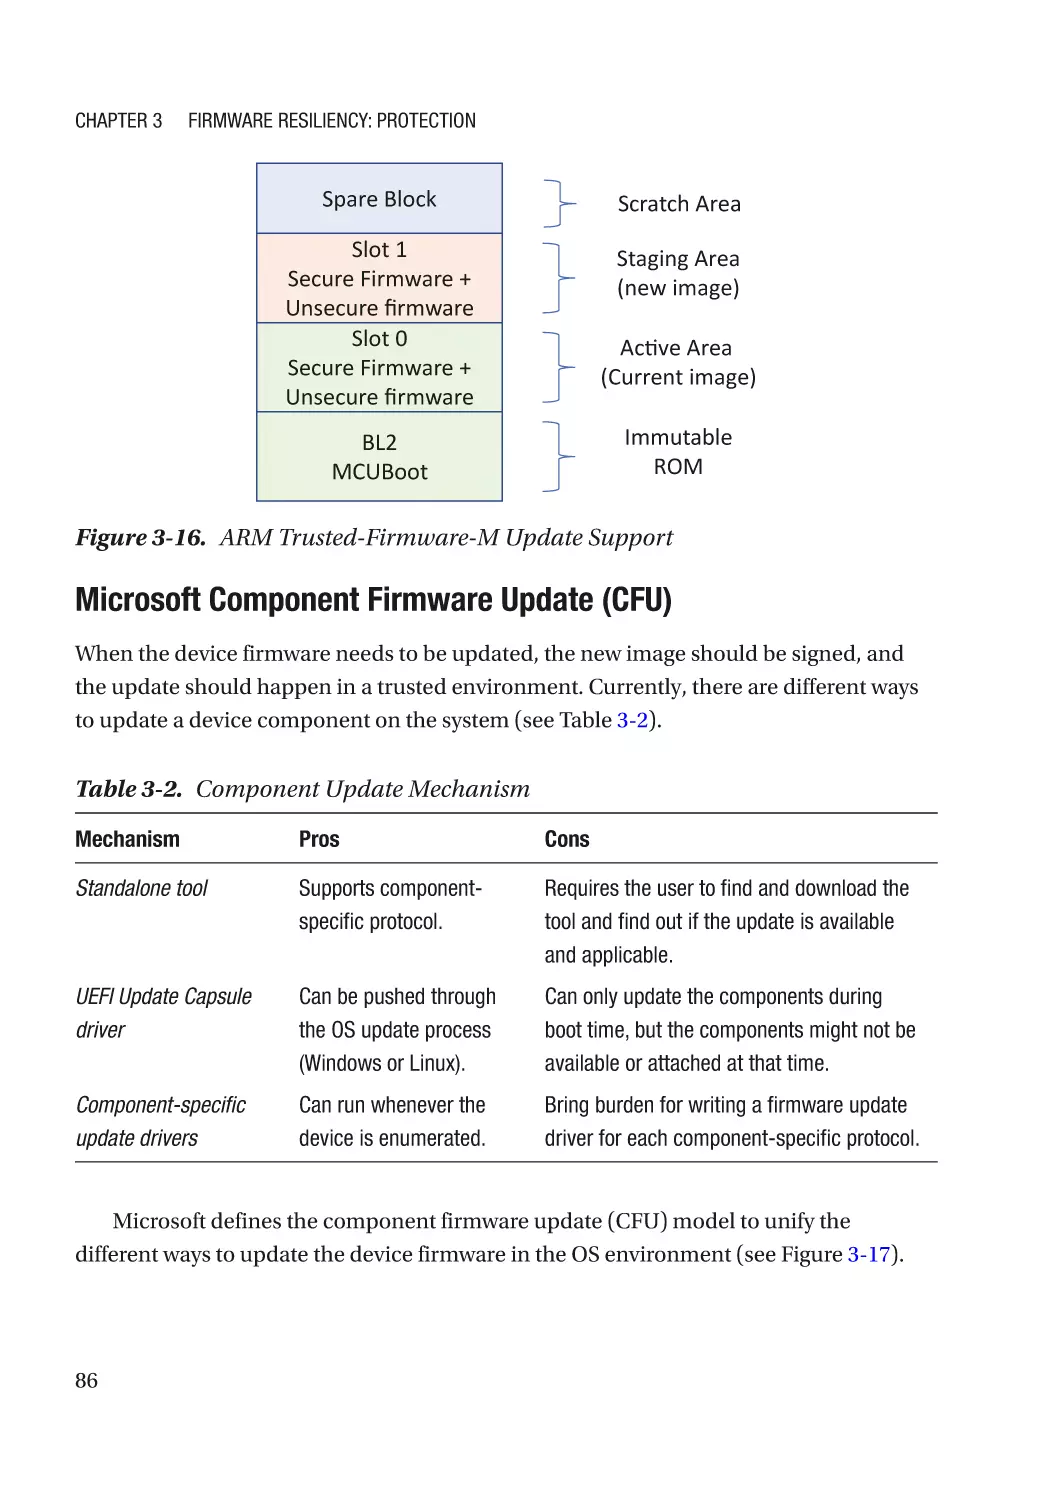 Microsoft Component Firmware Update (CFU)